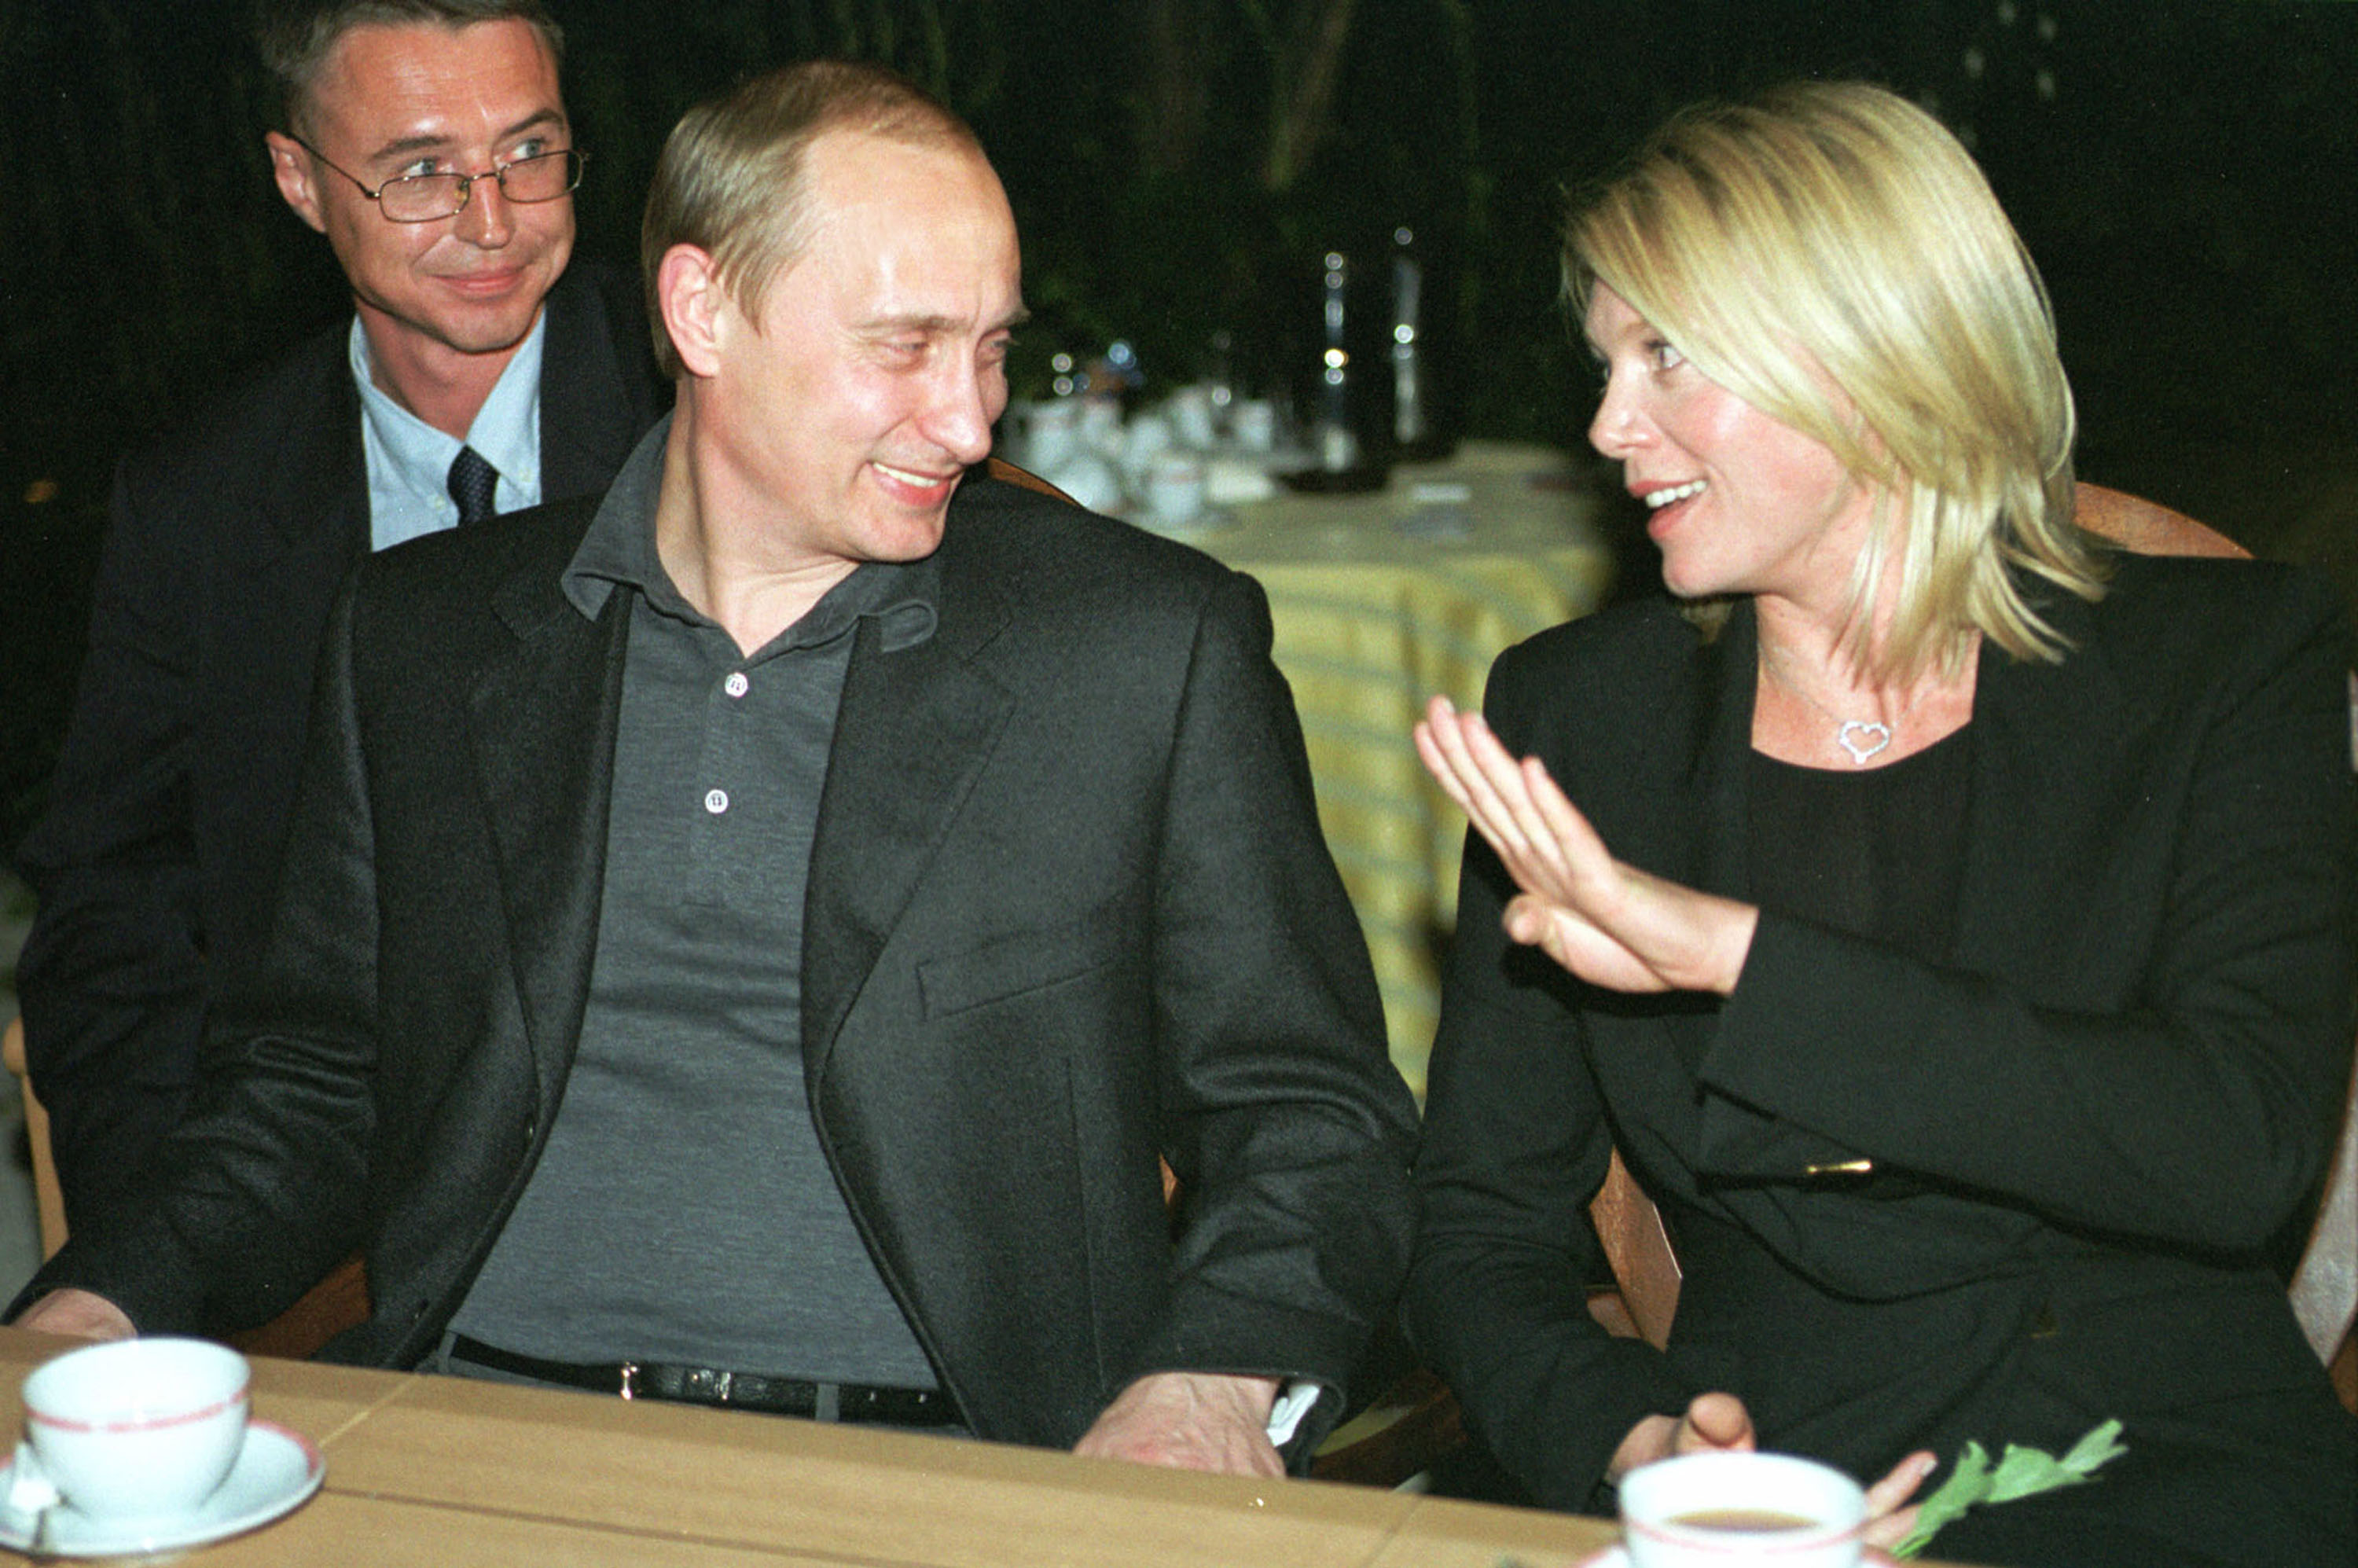 През 2001 г. Уилсън участва в Международния филмов фестивал в Москва, където се е среща с Владимир Путин, който е признал, че й е фен.<br />
<br />
В голямото кино Уилсън работи и с Шон Конъри през 2002-2003.<br />
В годините след това актрисата участва с някои малки роли във филми, сред които "Супермен".През 2012 г. тя създава своя марка бельо на име Уили Уилсън, а магазините са разположение в Лос Анджелис. През 2013 г. тя получава наградата за най-добра актриса на Международния филмов фестивал Cinerockom.Уилсън живее дълго време с гаджето си Деймън Харис, но през 2002 година се разделят. Те са родителите на един син - Марлоу Харис-Уилсън, който е роден през февруари 2002 година.